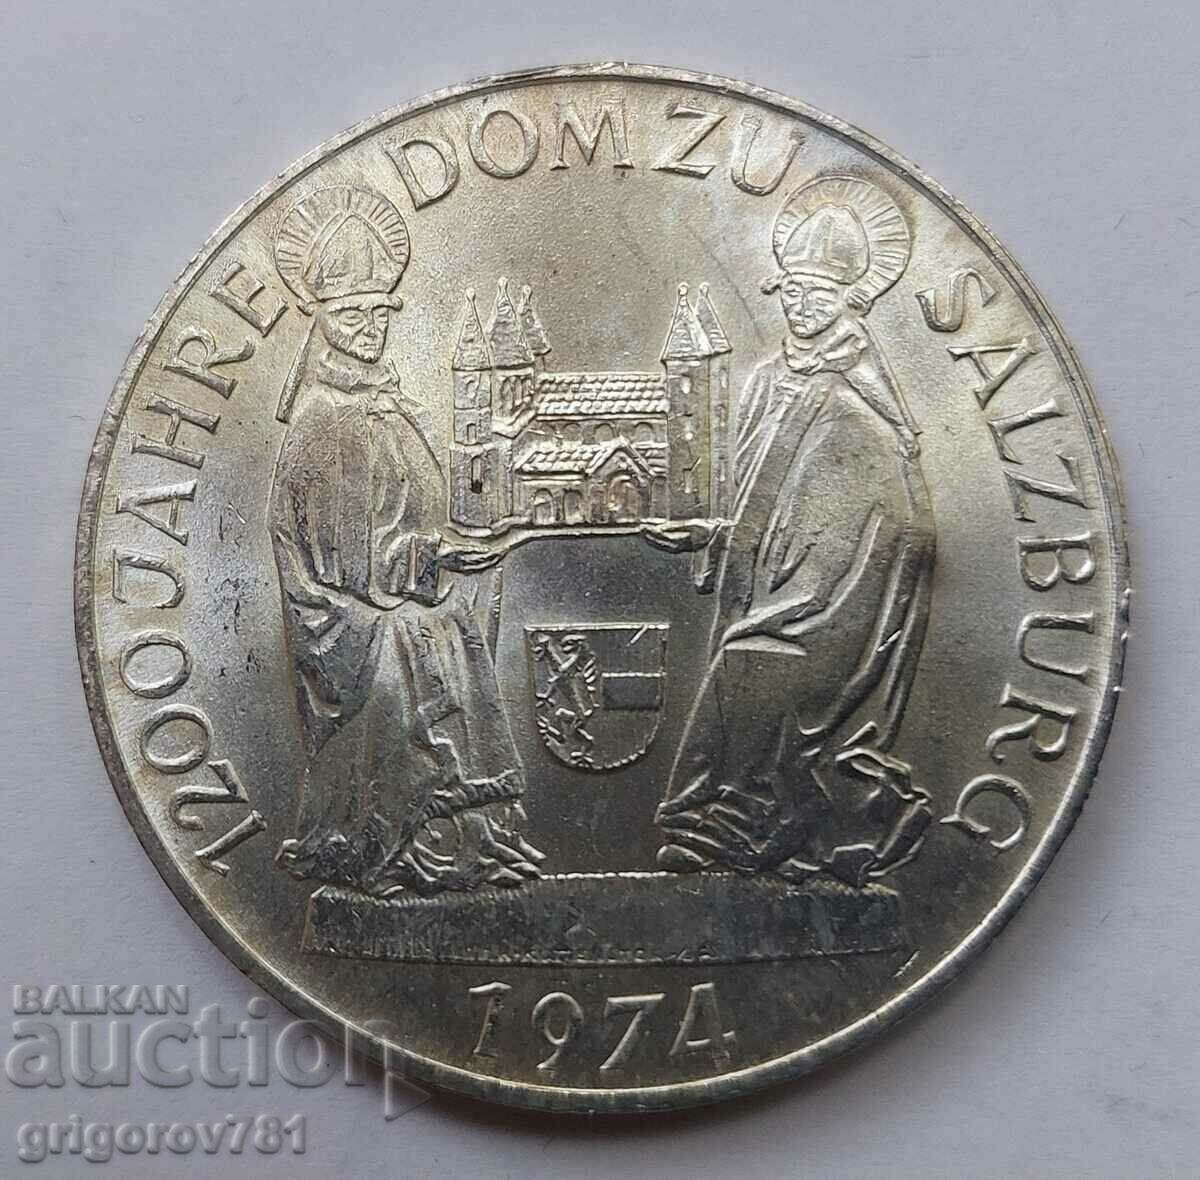 50 Shilling Silver Αυστρία 1974 - Ασημένιο νόμισμα #17